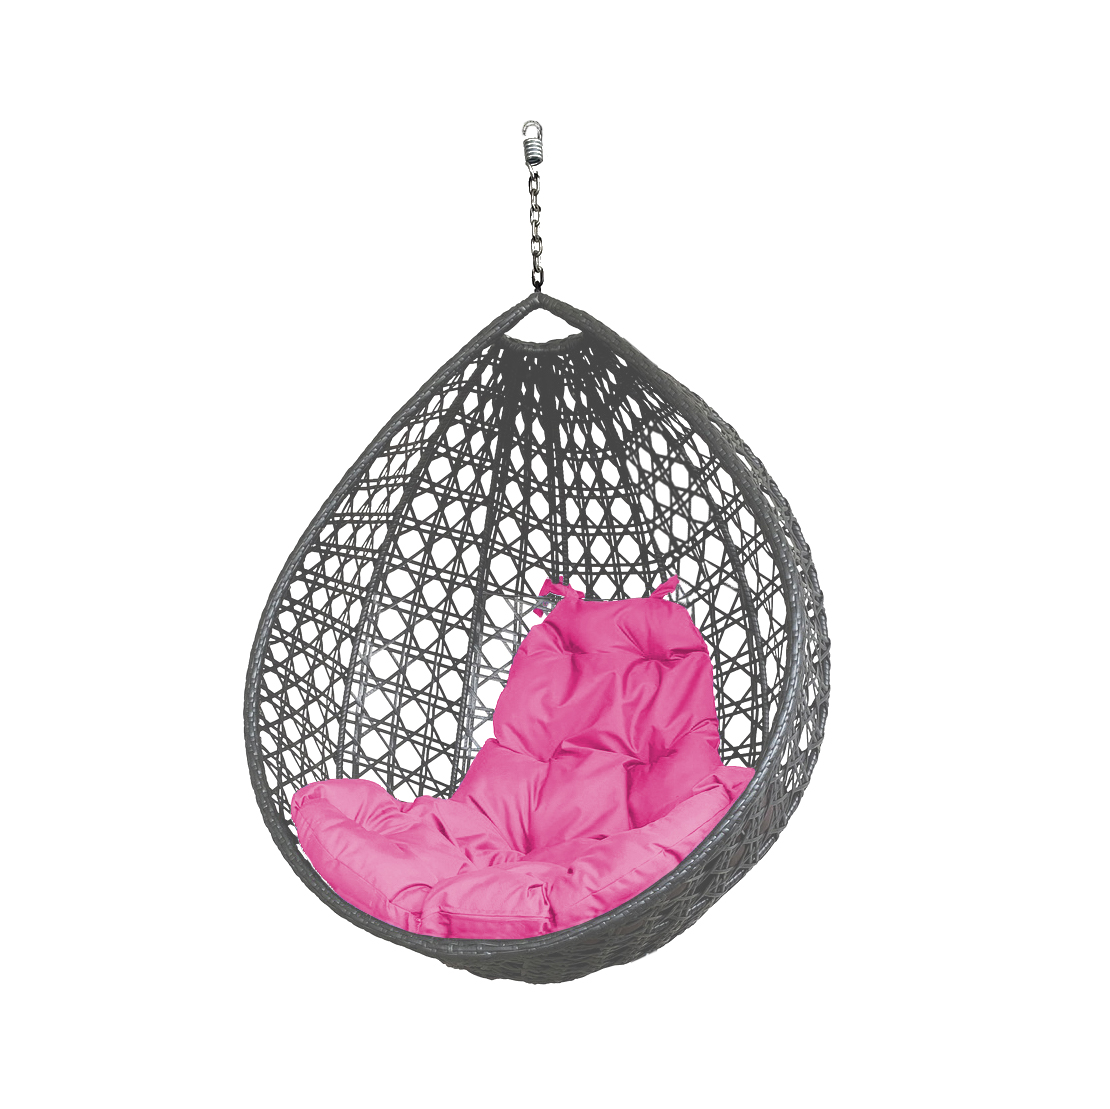 фото Подвесное кресло серое m-group капля люкс (без стойки) 11300308 розовая подушка